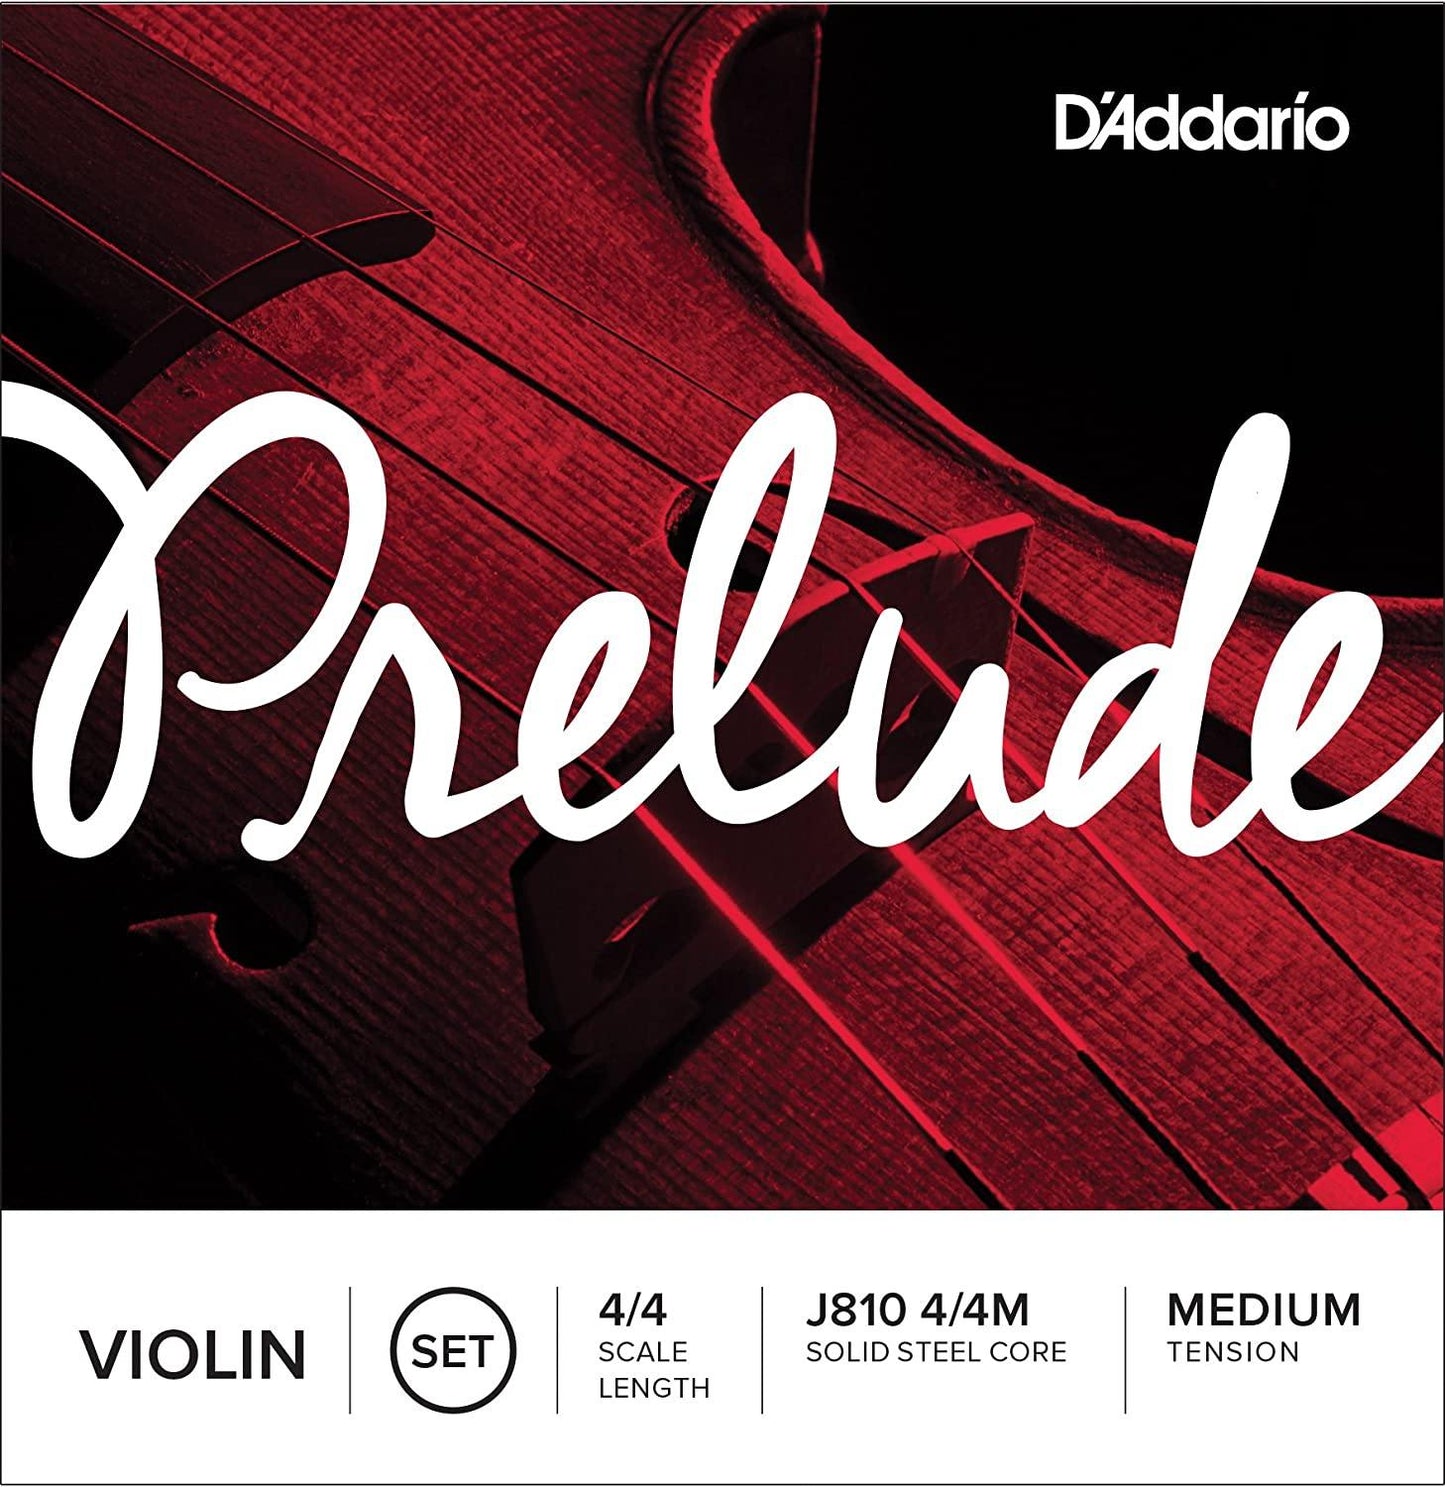 DAddario PRELUDE VIOLIN MEDIUM TENSION STRING SET - Rockit Music Canada